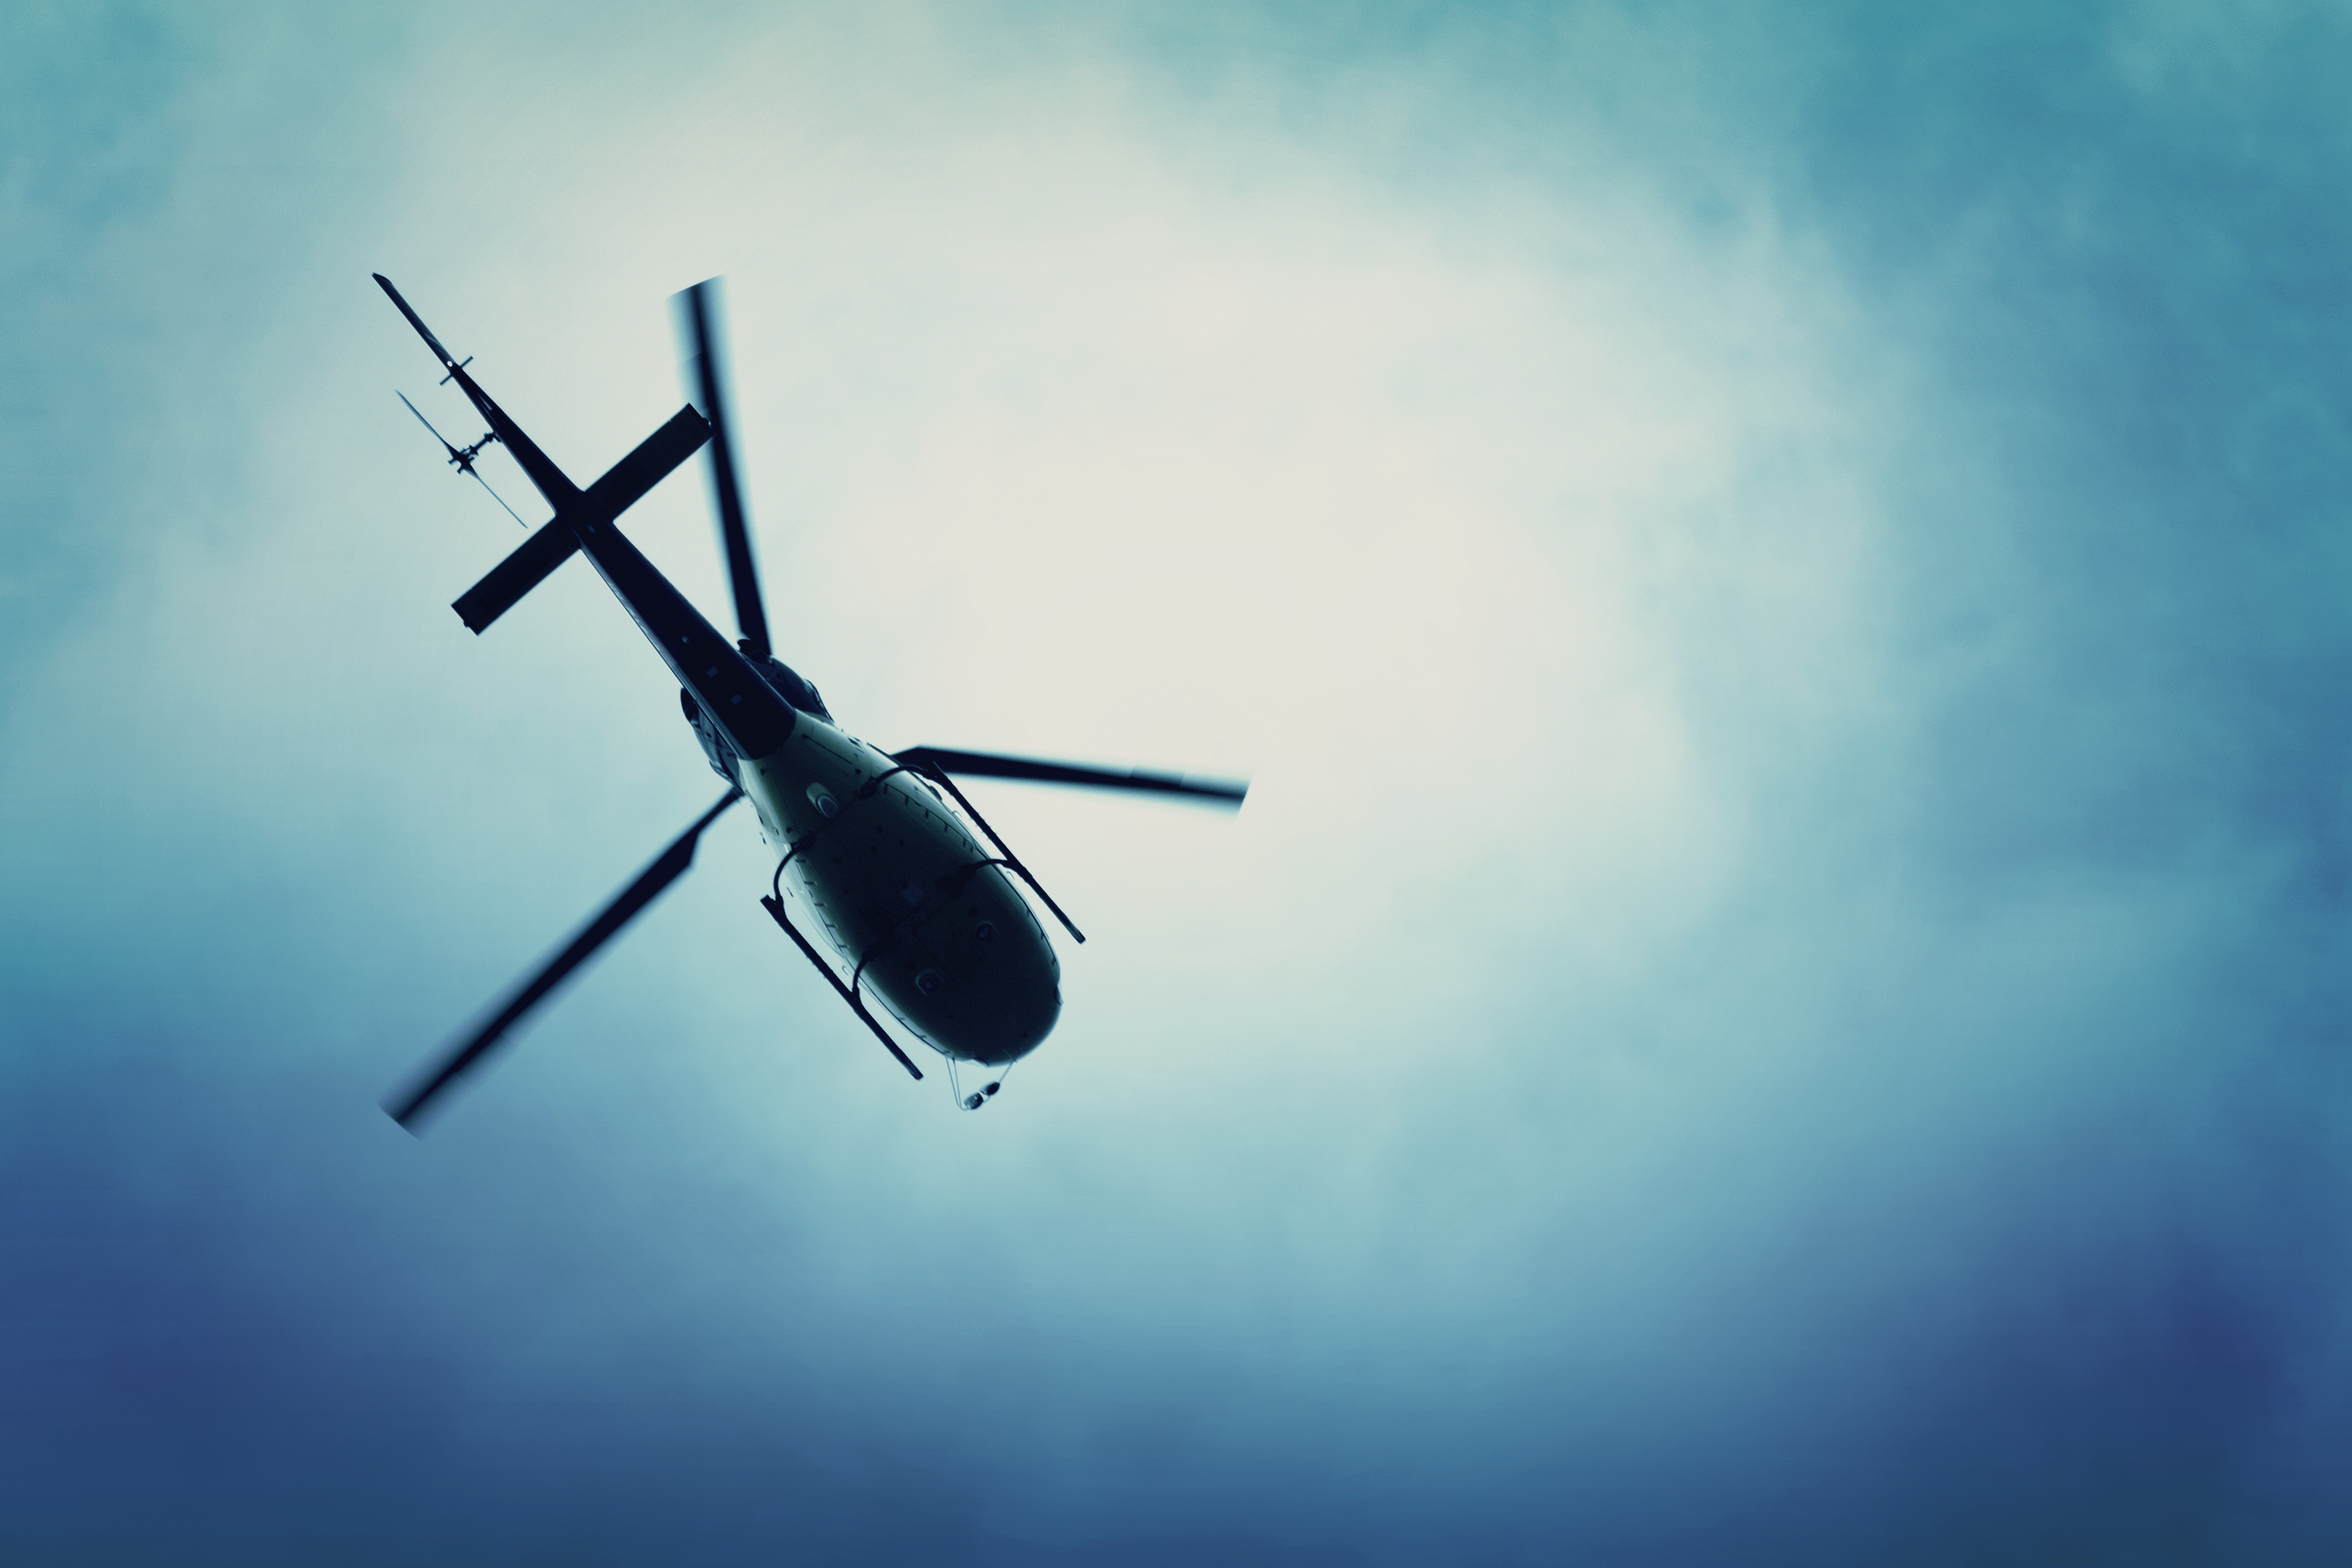 Helicóptero volando en el cielo azul. | Fuente: Shutterstock